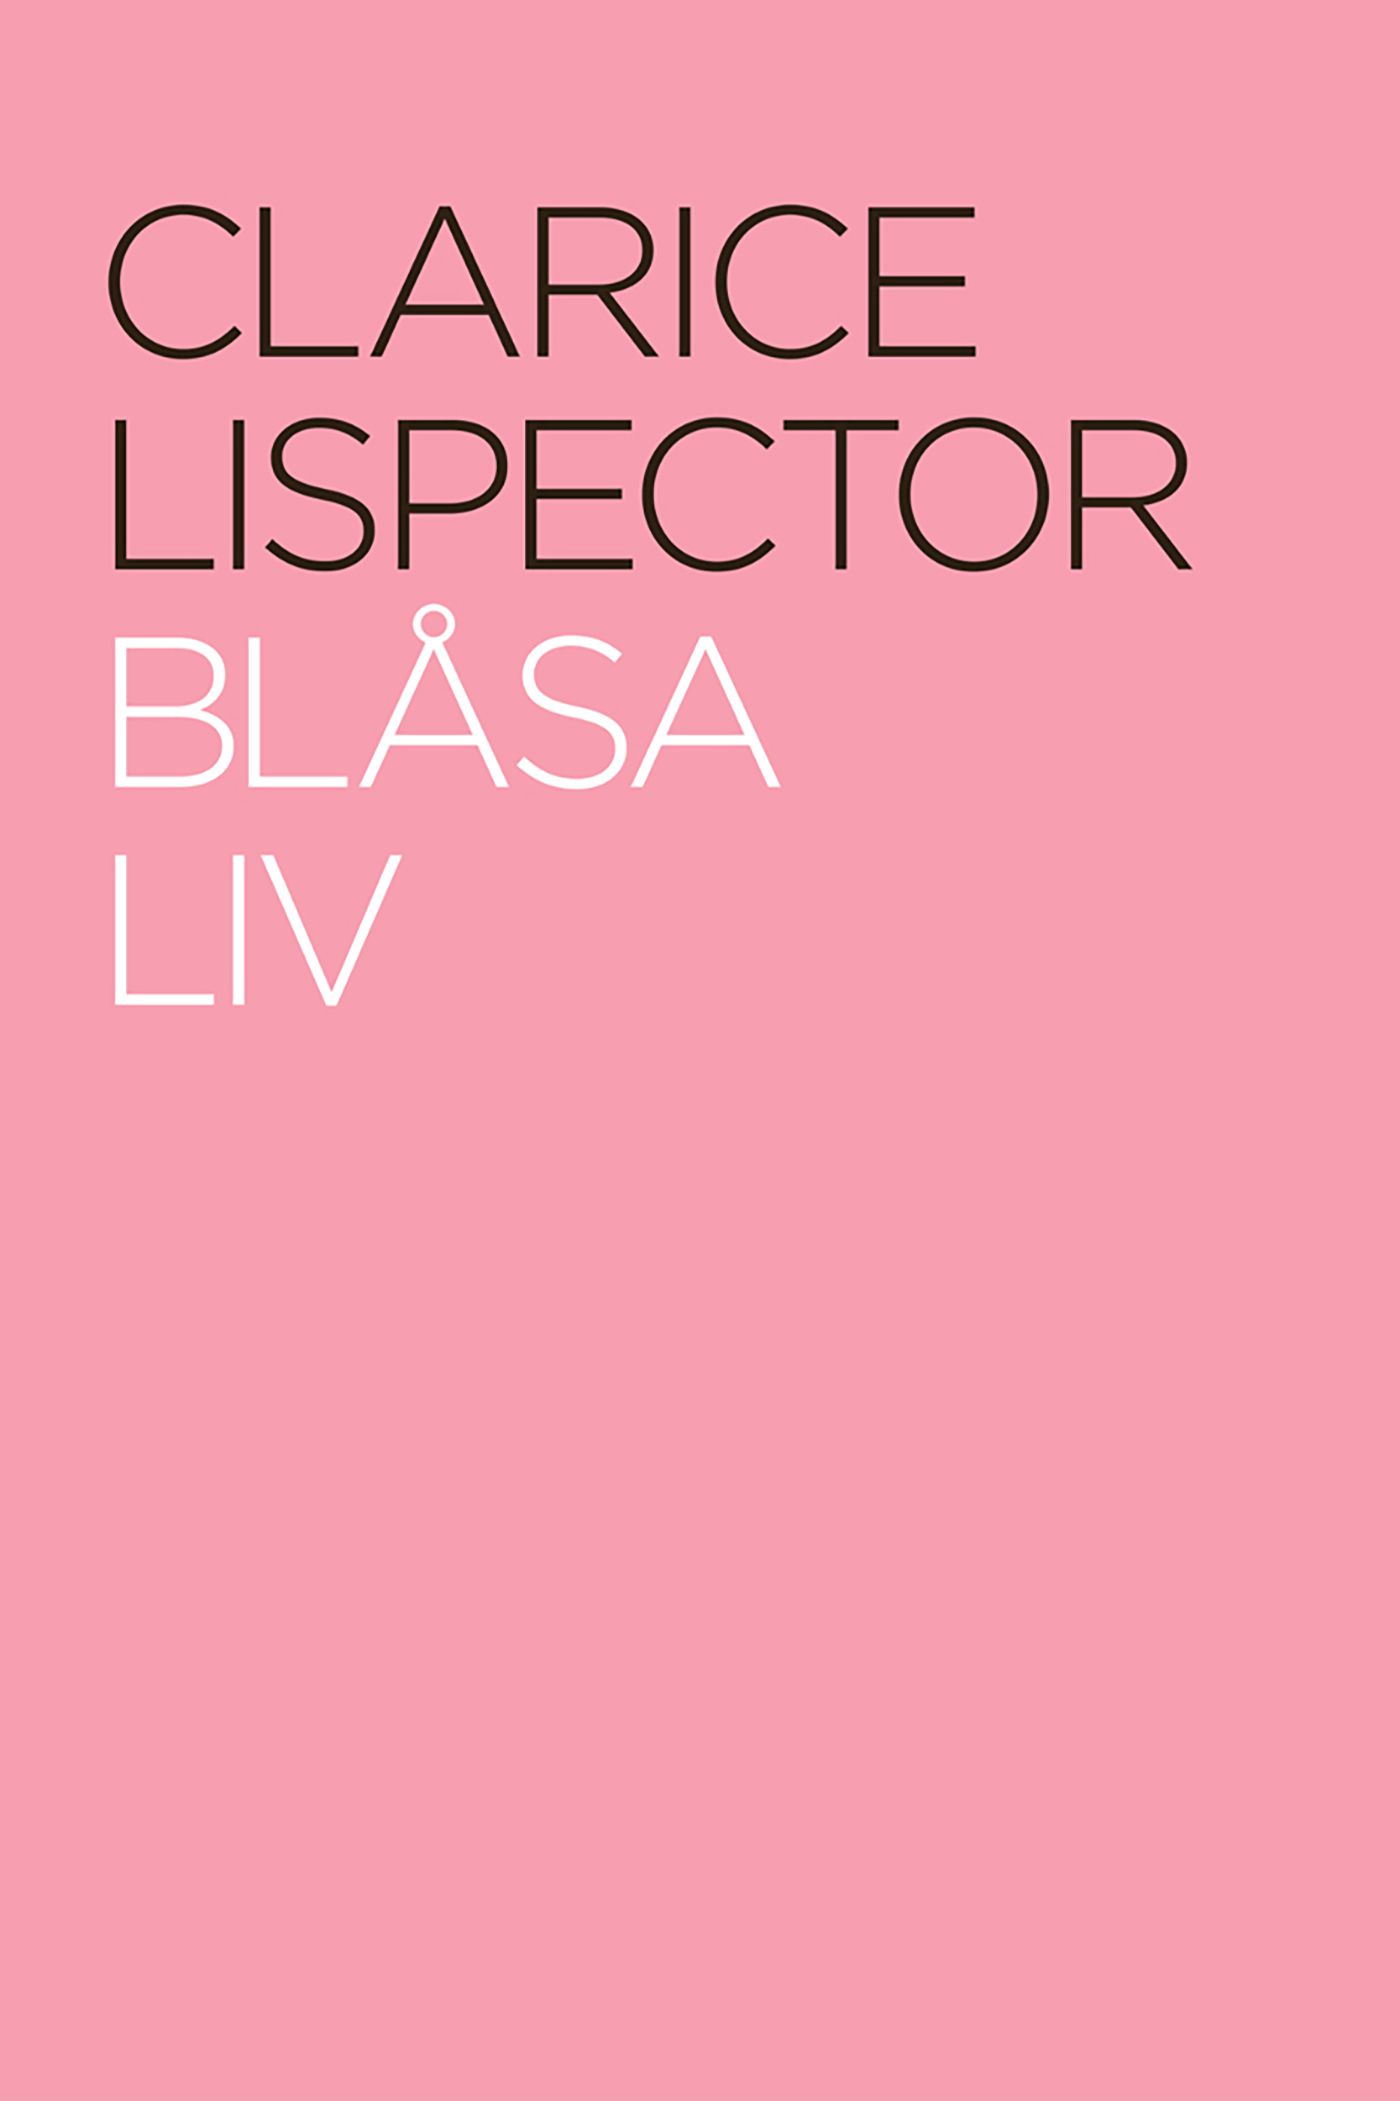 Blåsa liv, eBook by Clarice Lispector